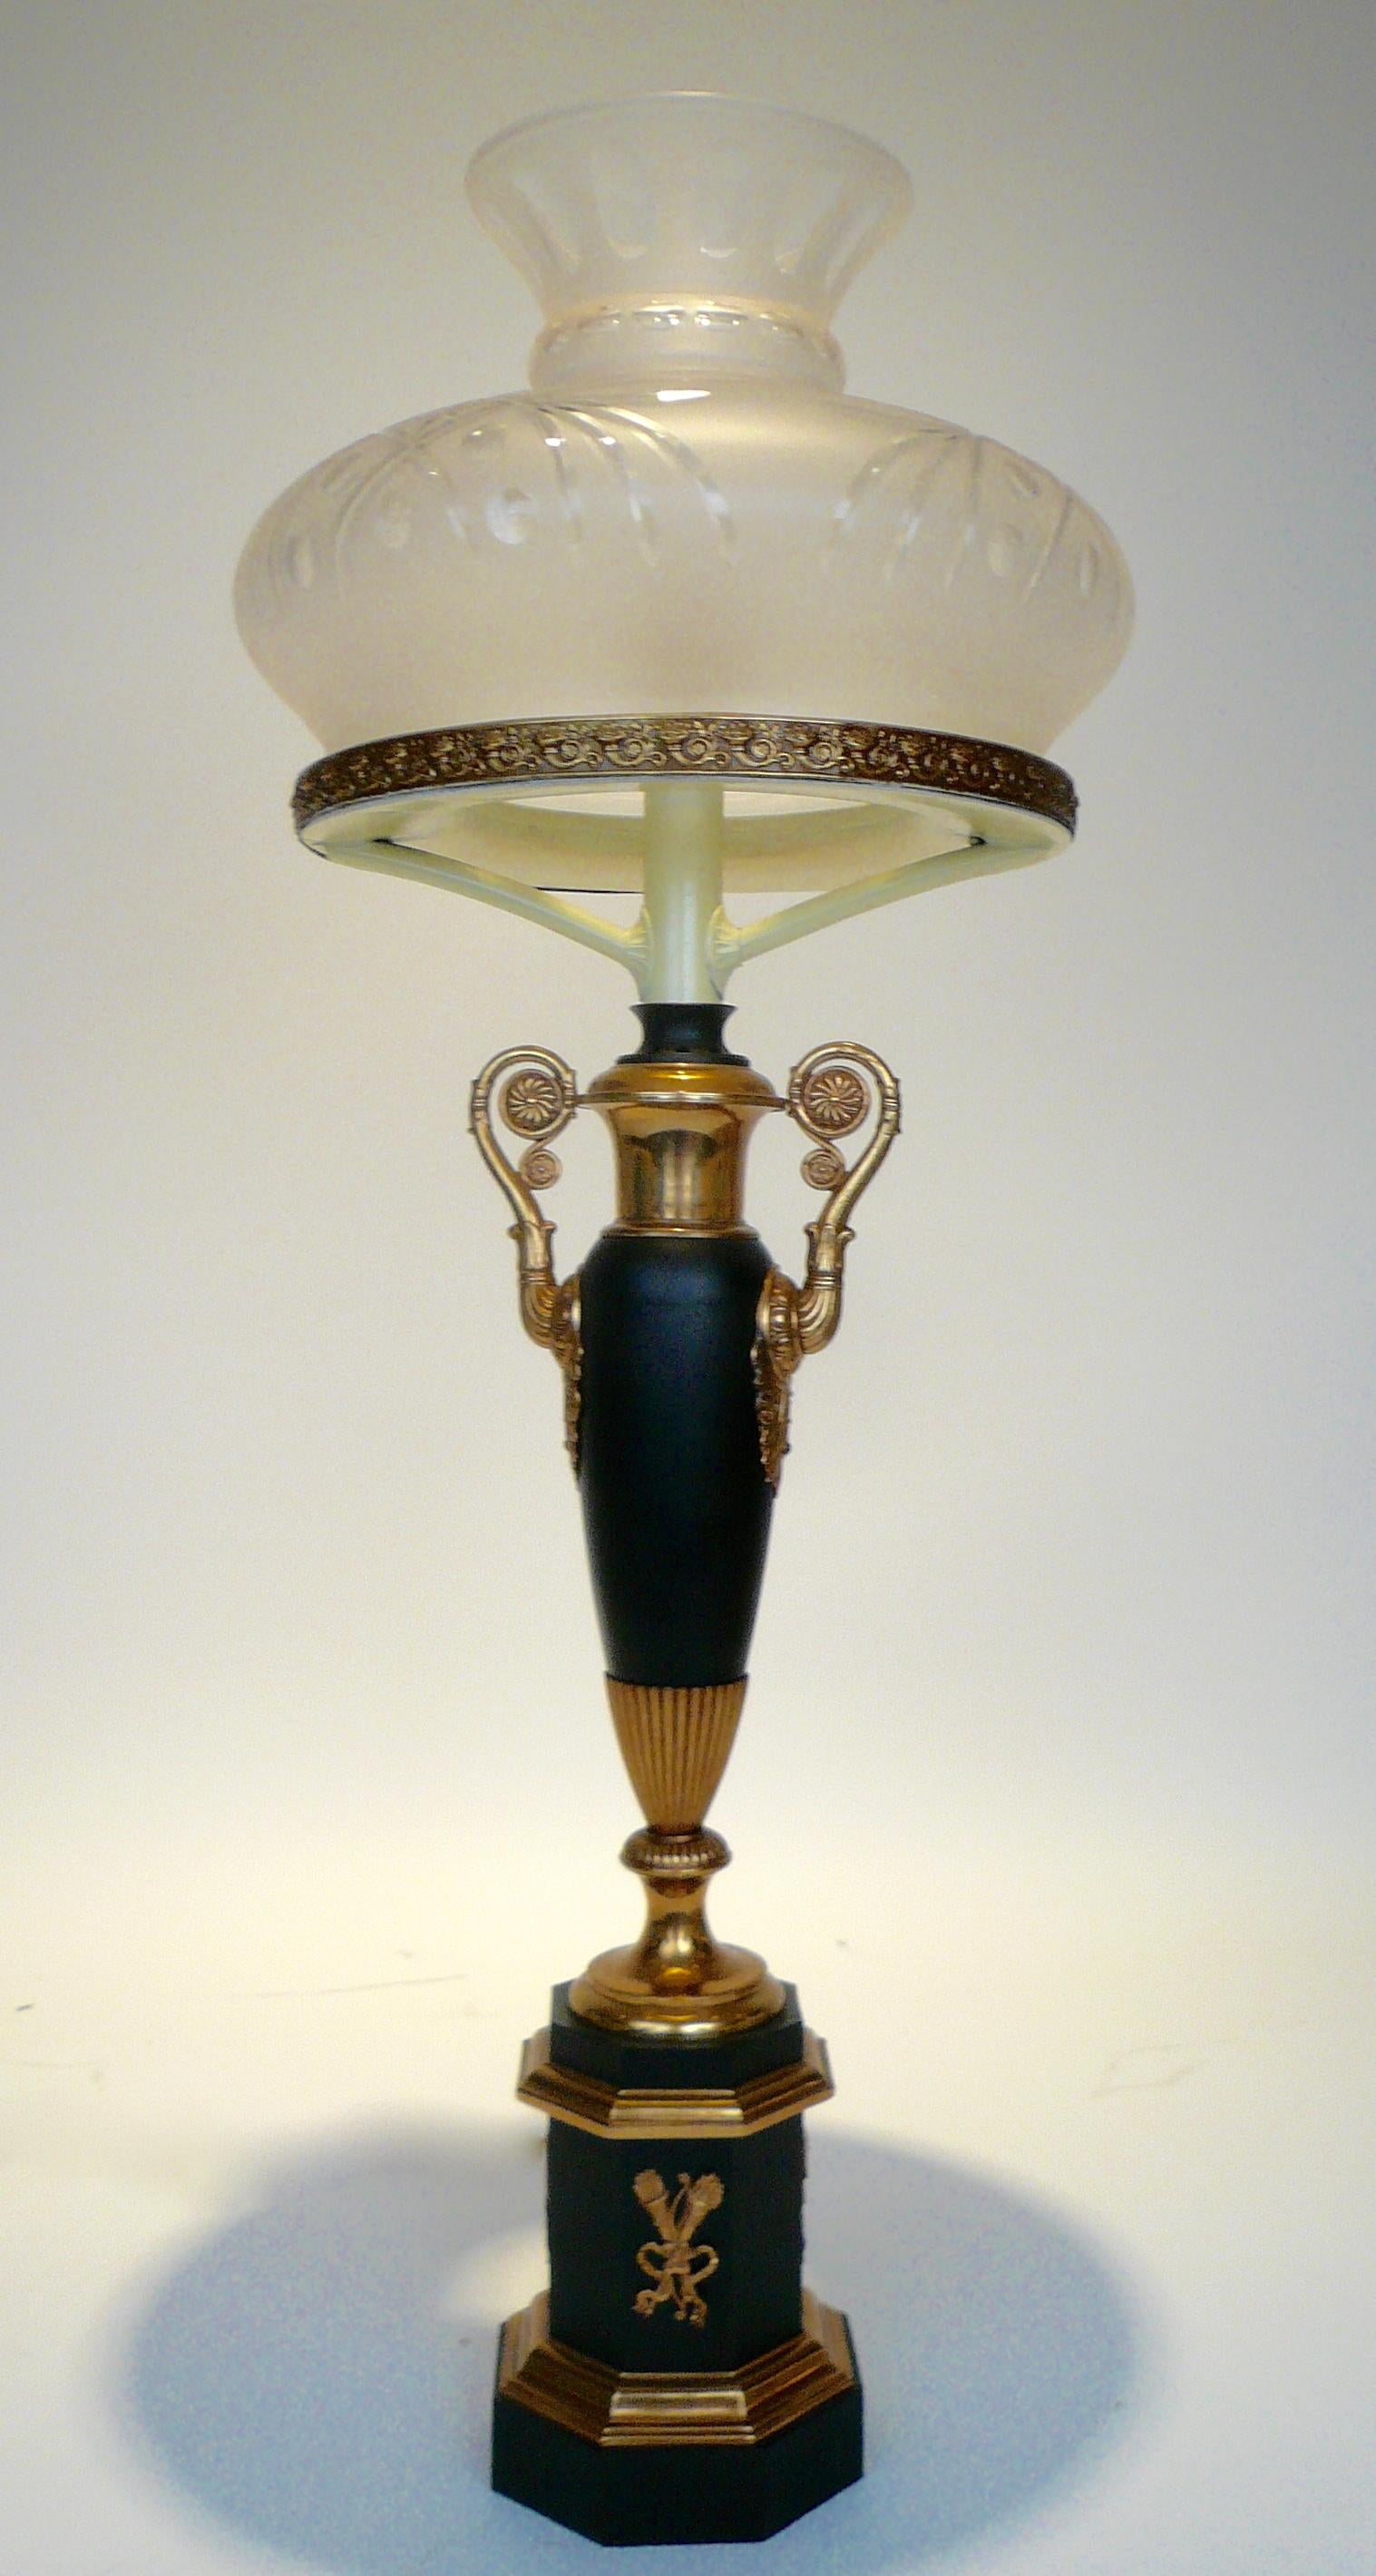 Cette belle lampe sinumbra en forme d'urne a conservé son réservoir d'huile d'origine. Elle présente des motifs néoclassiques, notamment des cornes d'abondance, des feuilles d'acanthe et des rosettes florales.
 